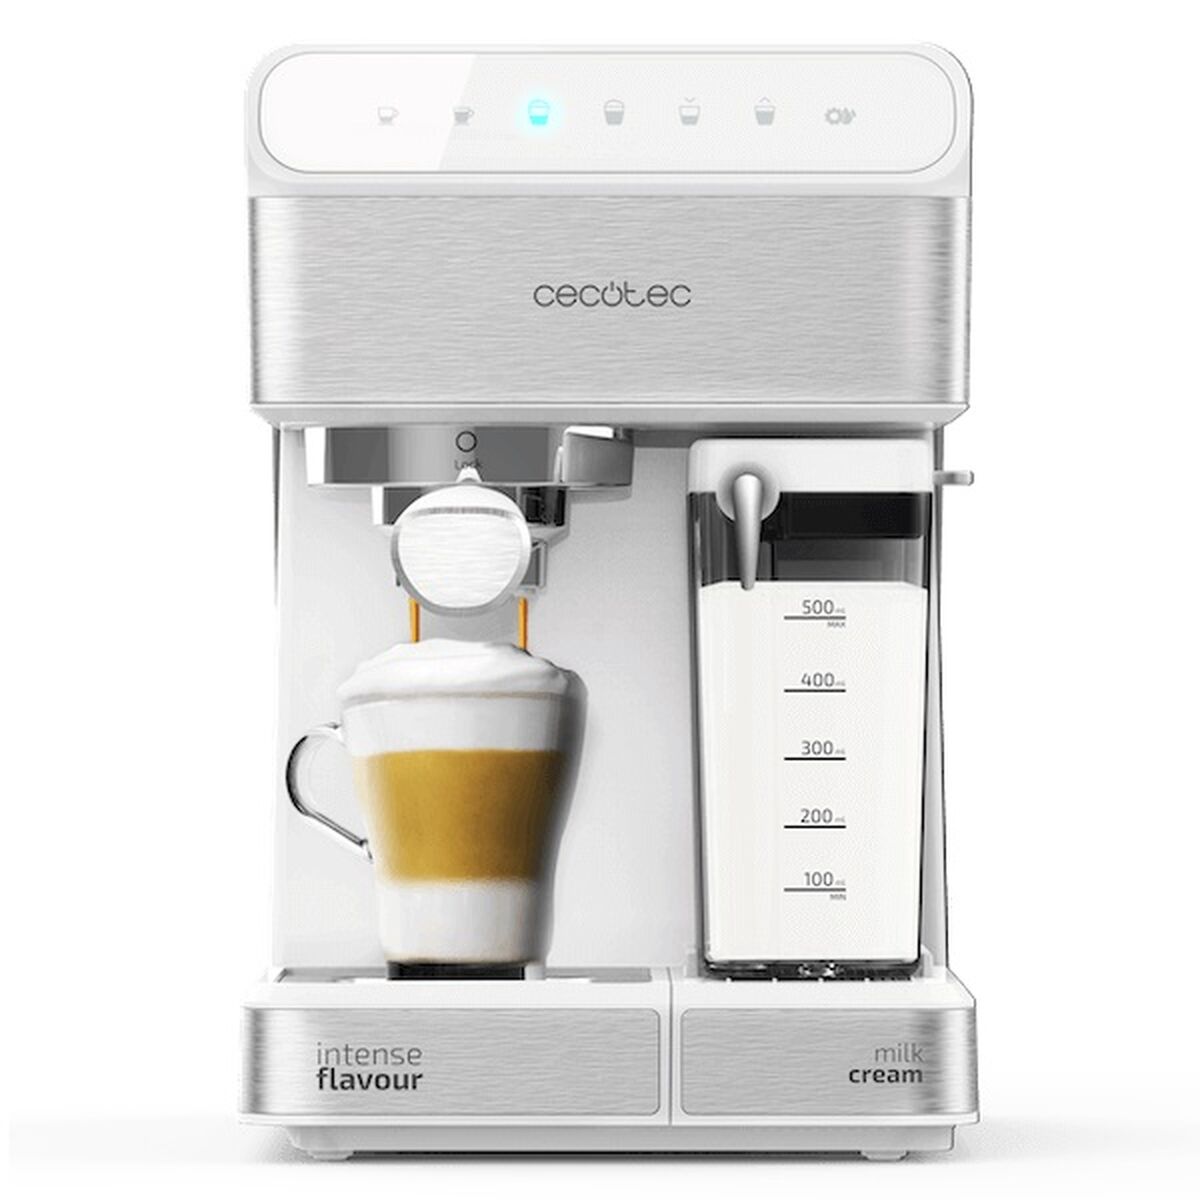 Express手动咖啡机Cecotec 1350W 1,4 L白色1,4 L